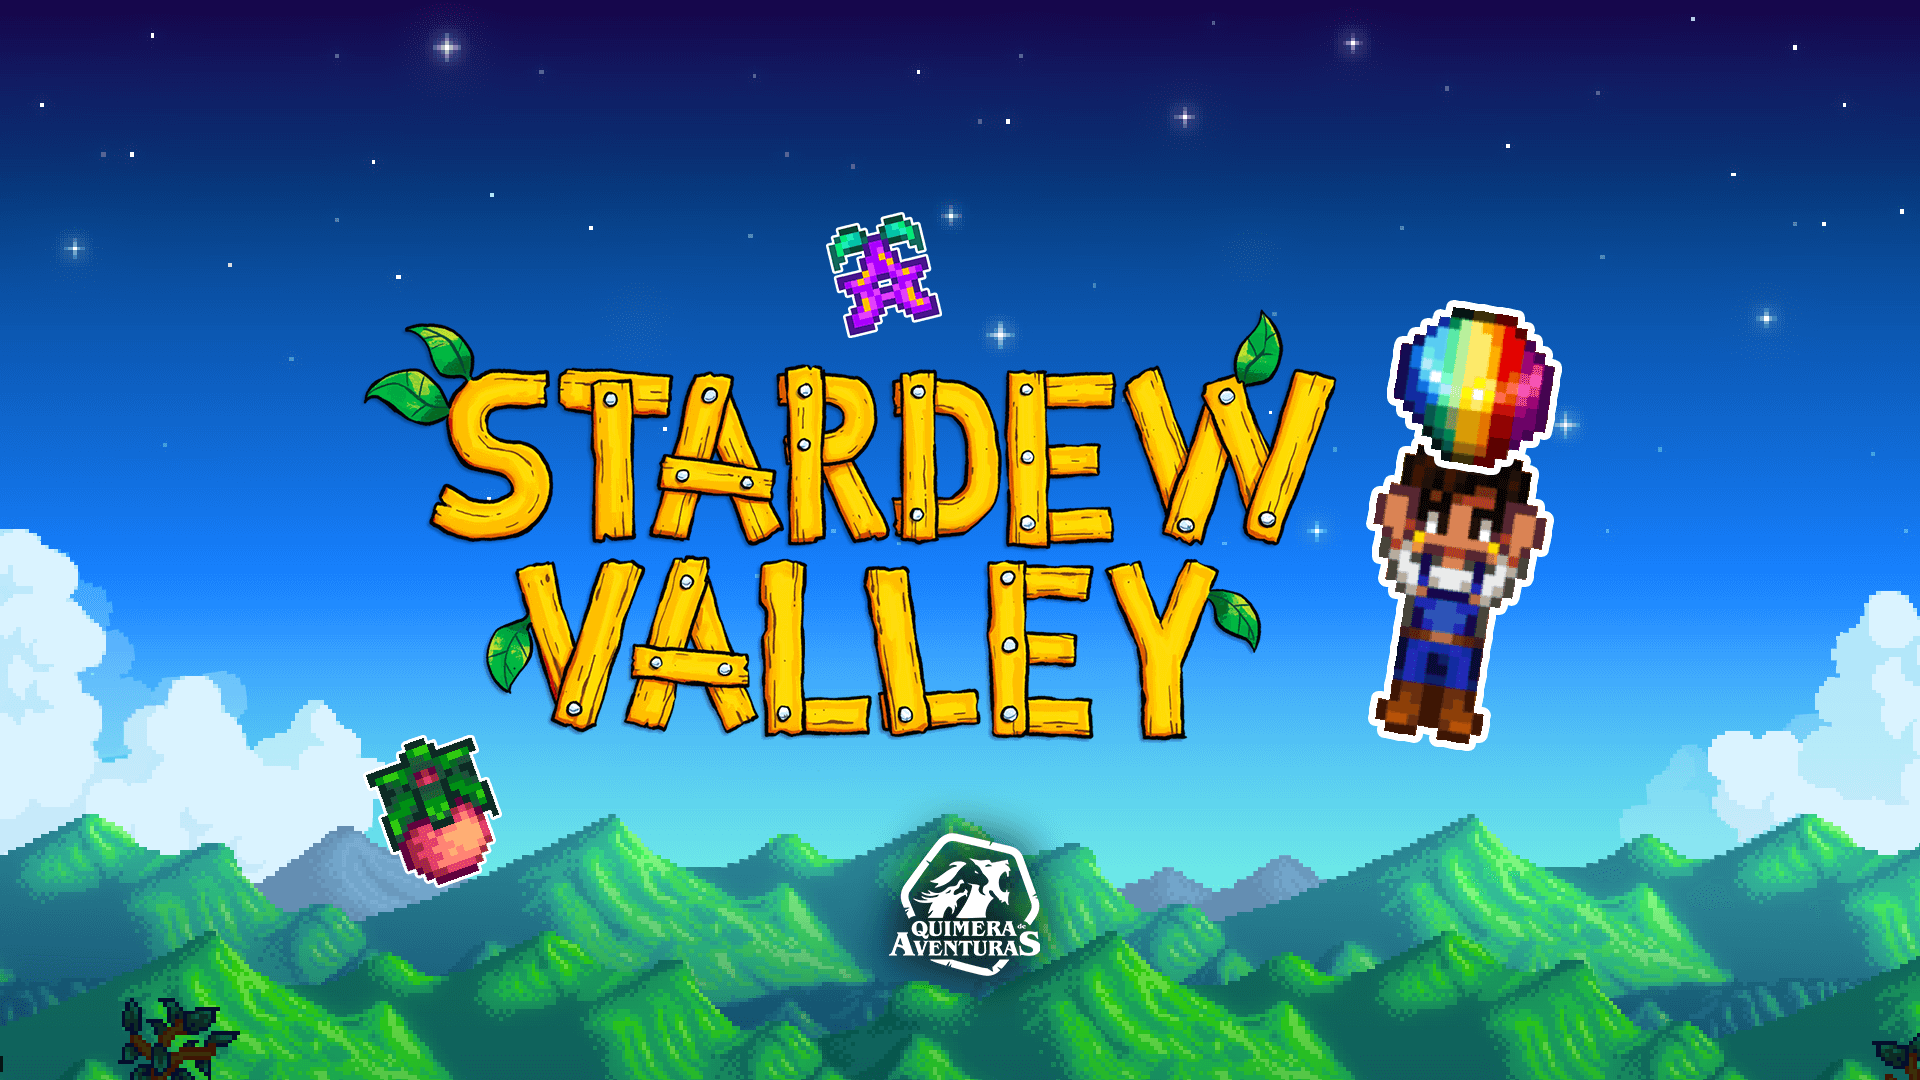 Thumbnail para o Quimera de Aventuras, relacionado ao jogo Stardew Valley. Encontra-se ao fundo uma bela imagem do horizonte, com um céu azul, e um fazendeiro em um traço 2d está em destaque segurando uma pedra preciosa, ao lado do título "Stardew Valley"